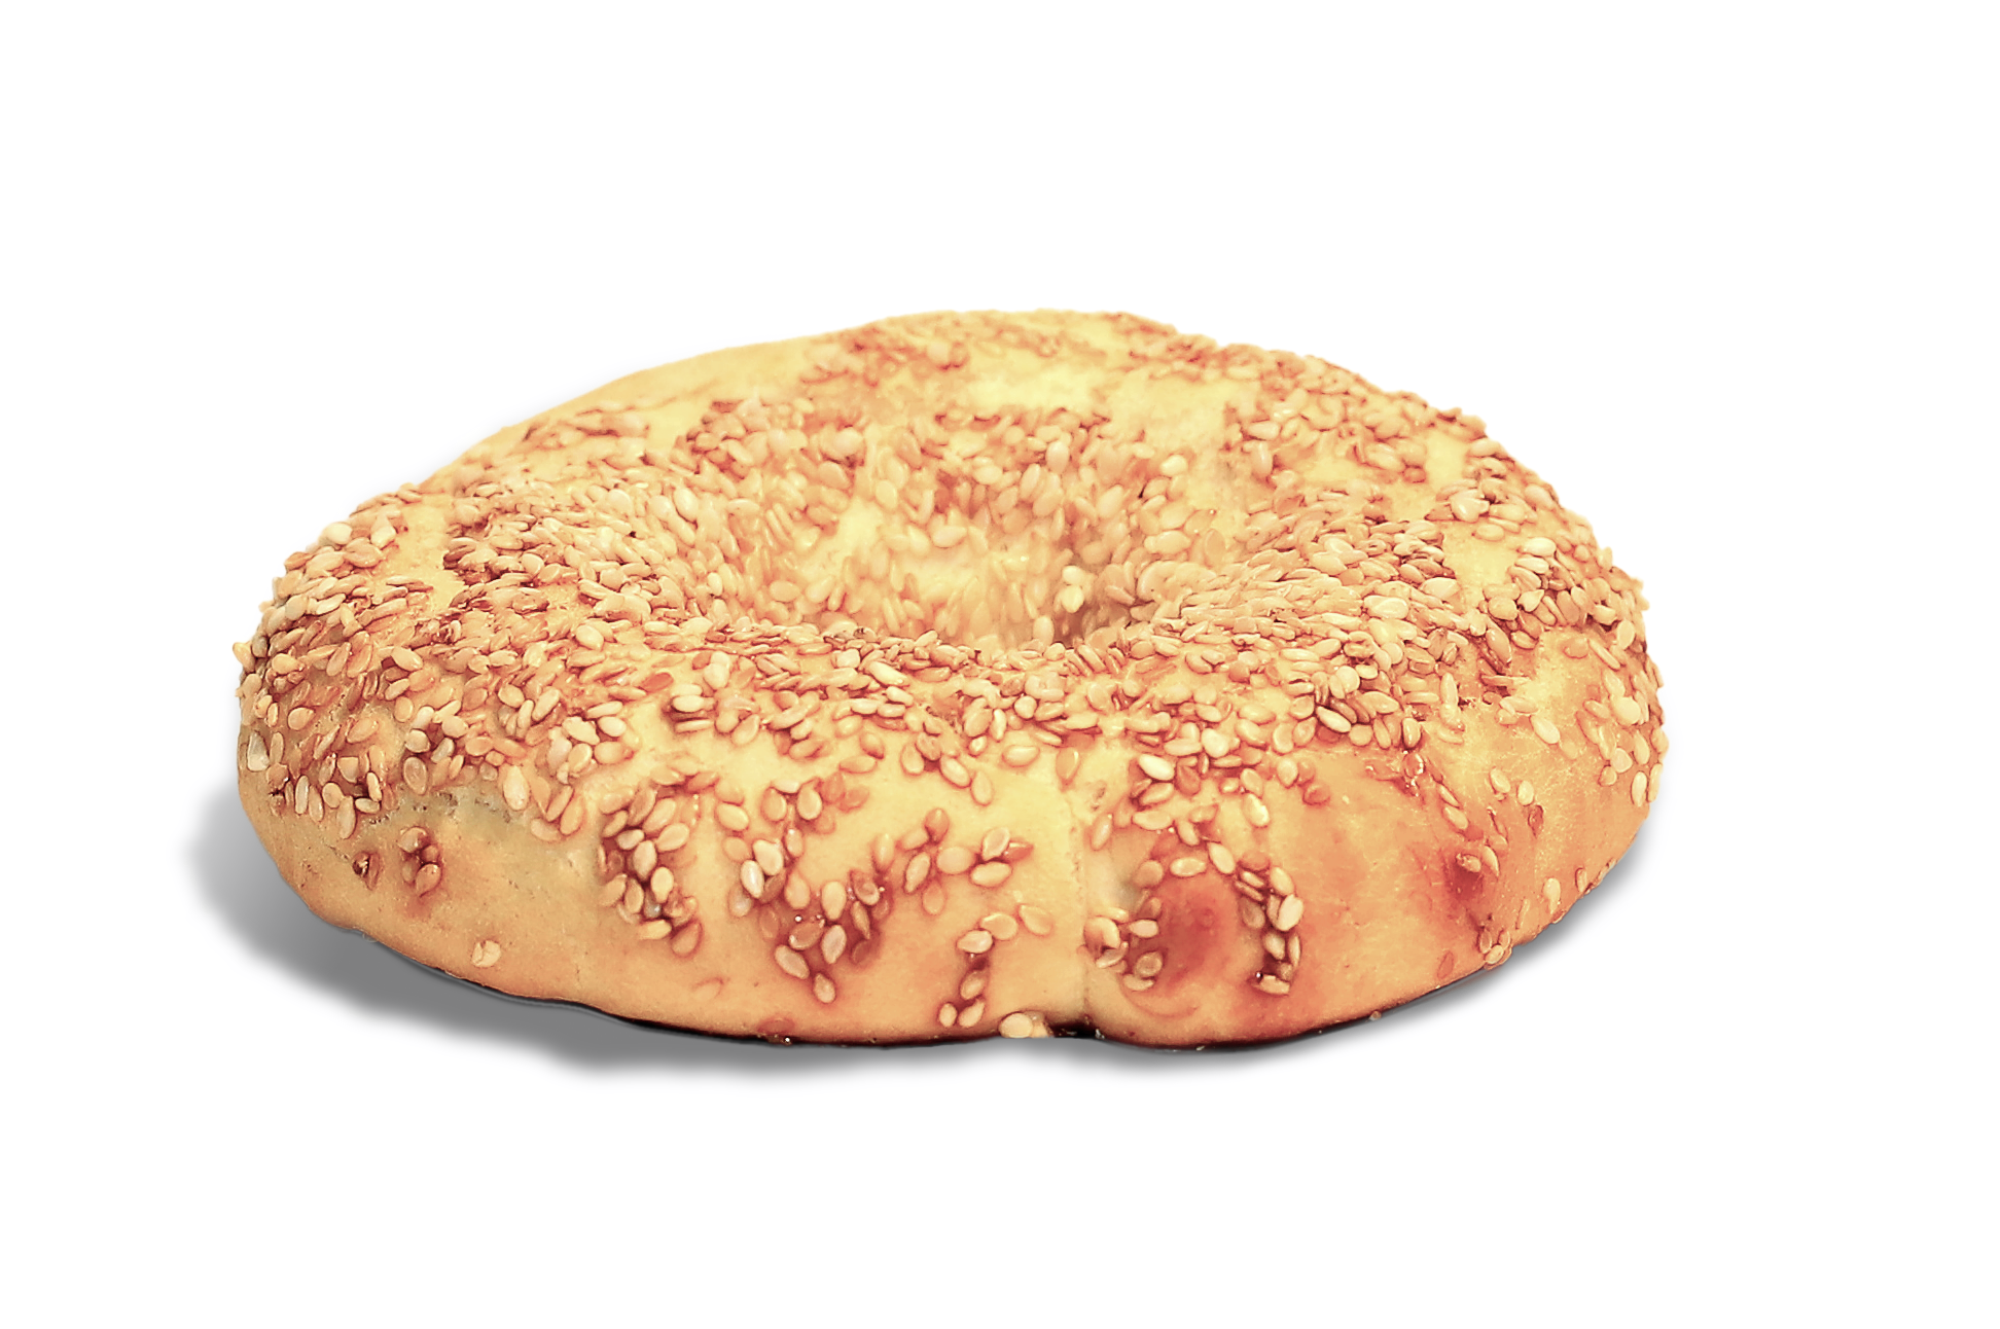 Булочка с кунжутом читать. Белый хлеб с кунжутом. Выпечка с кунжутом. Булка с кунжутом текстура. Иранский хлеб с кунжутом.